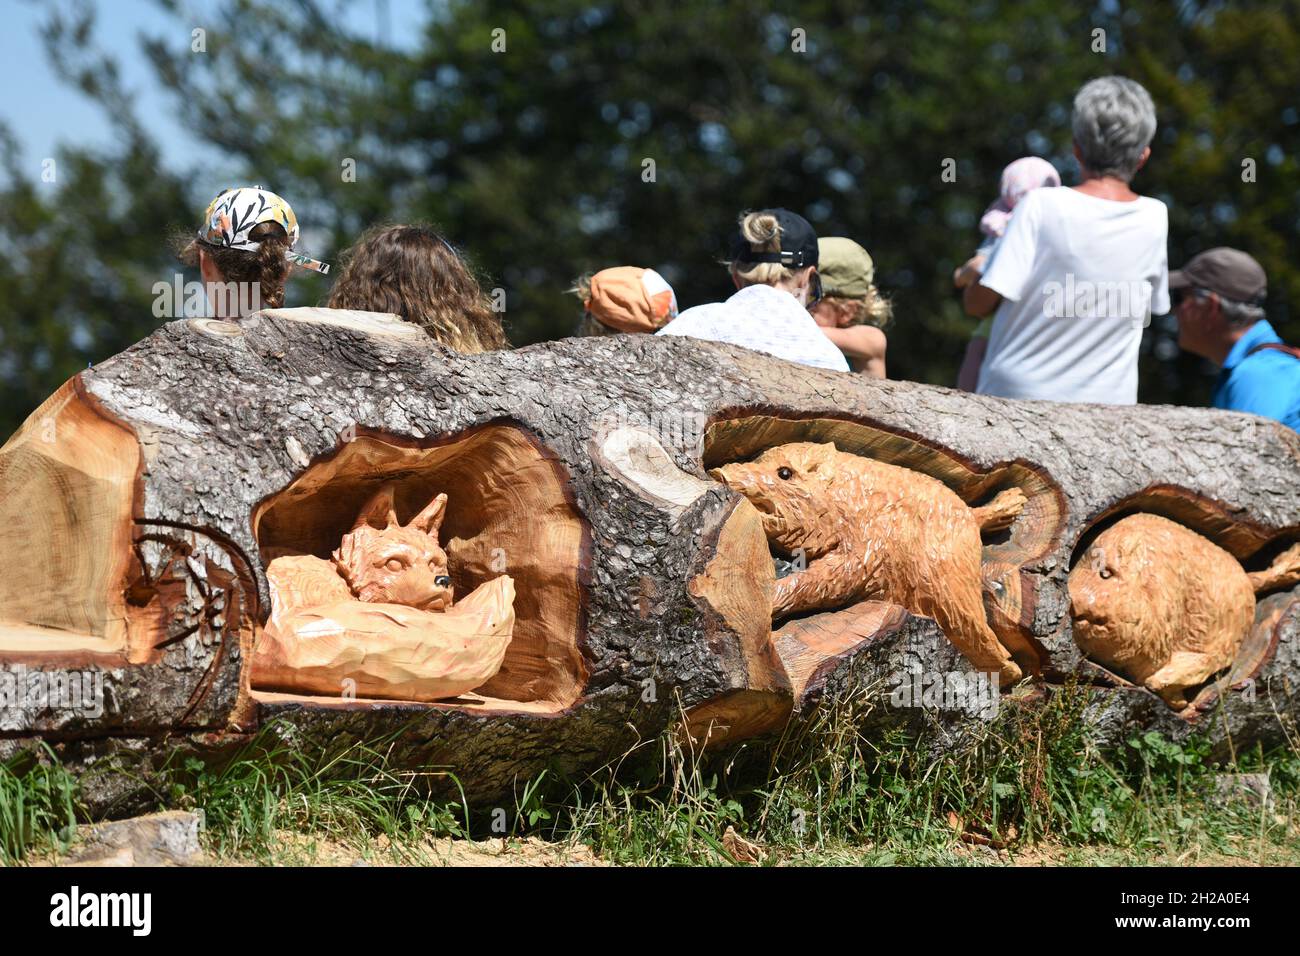 Geschnitzte Wildtiere in einem Baumstamm auf dem Grünberg (Bezirk Gmunden, Oberösterreich, Österreich) - Carved wild animals in a tree trunk on the Gr Stock Photo